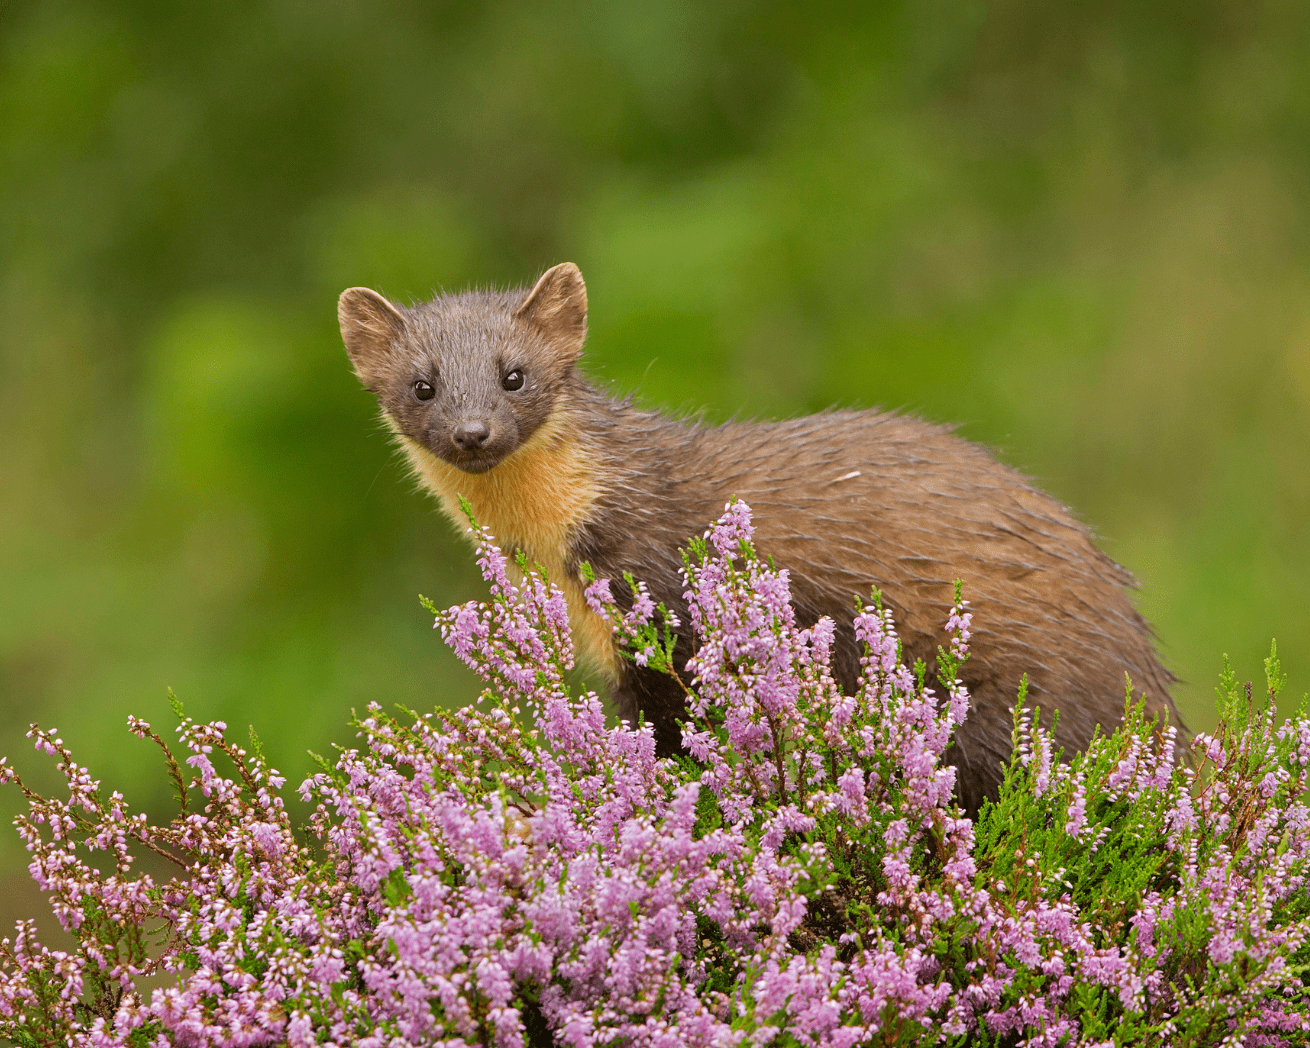 Weasel behind flowers